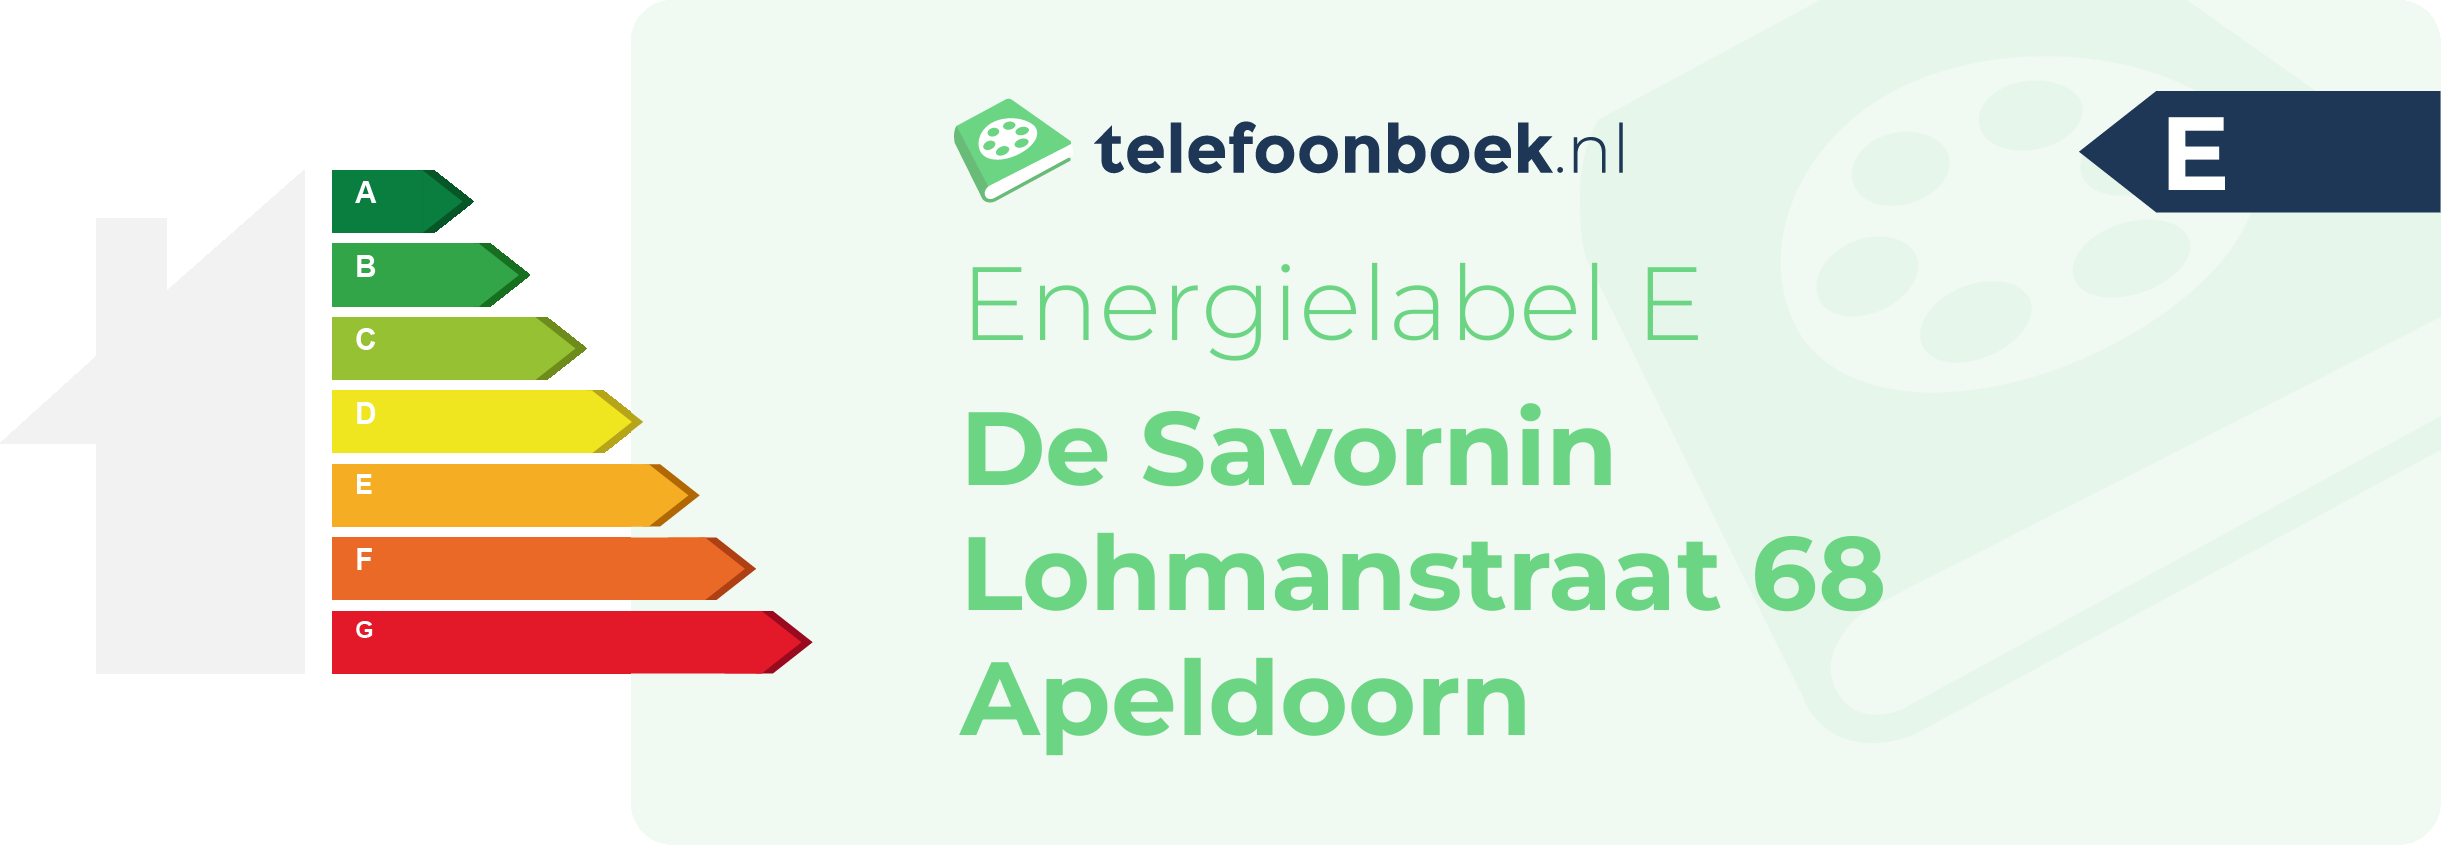 Energielabel De Savornin Lohmanstraat 68 Apeldoorn